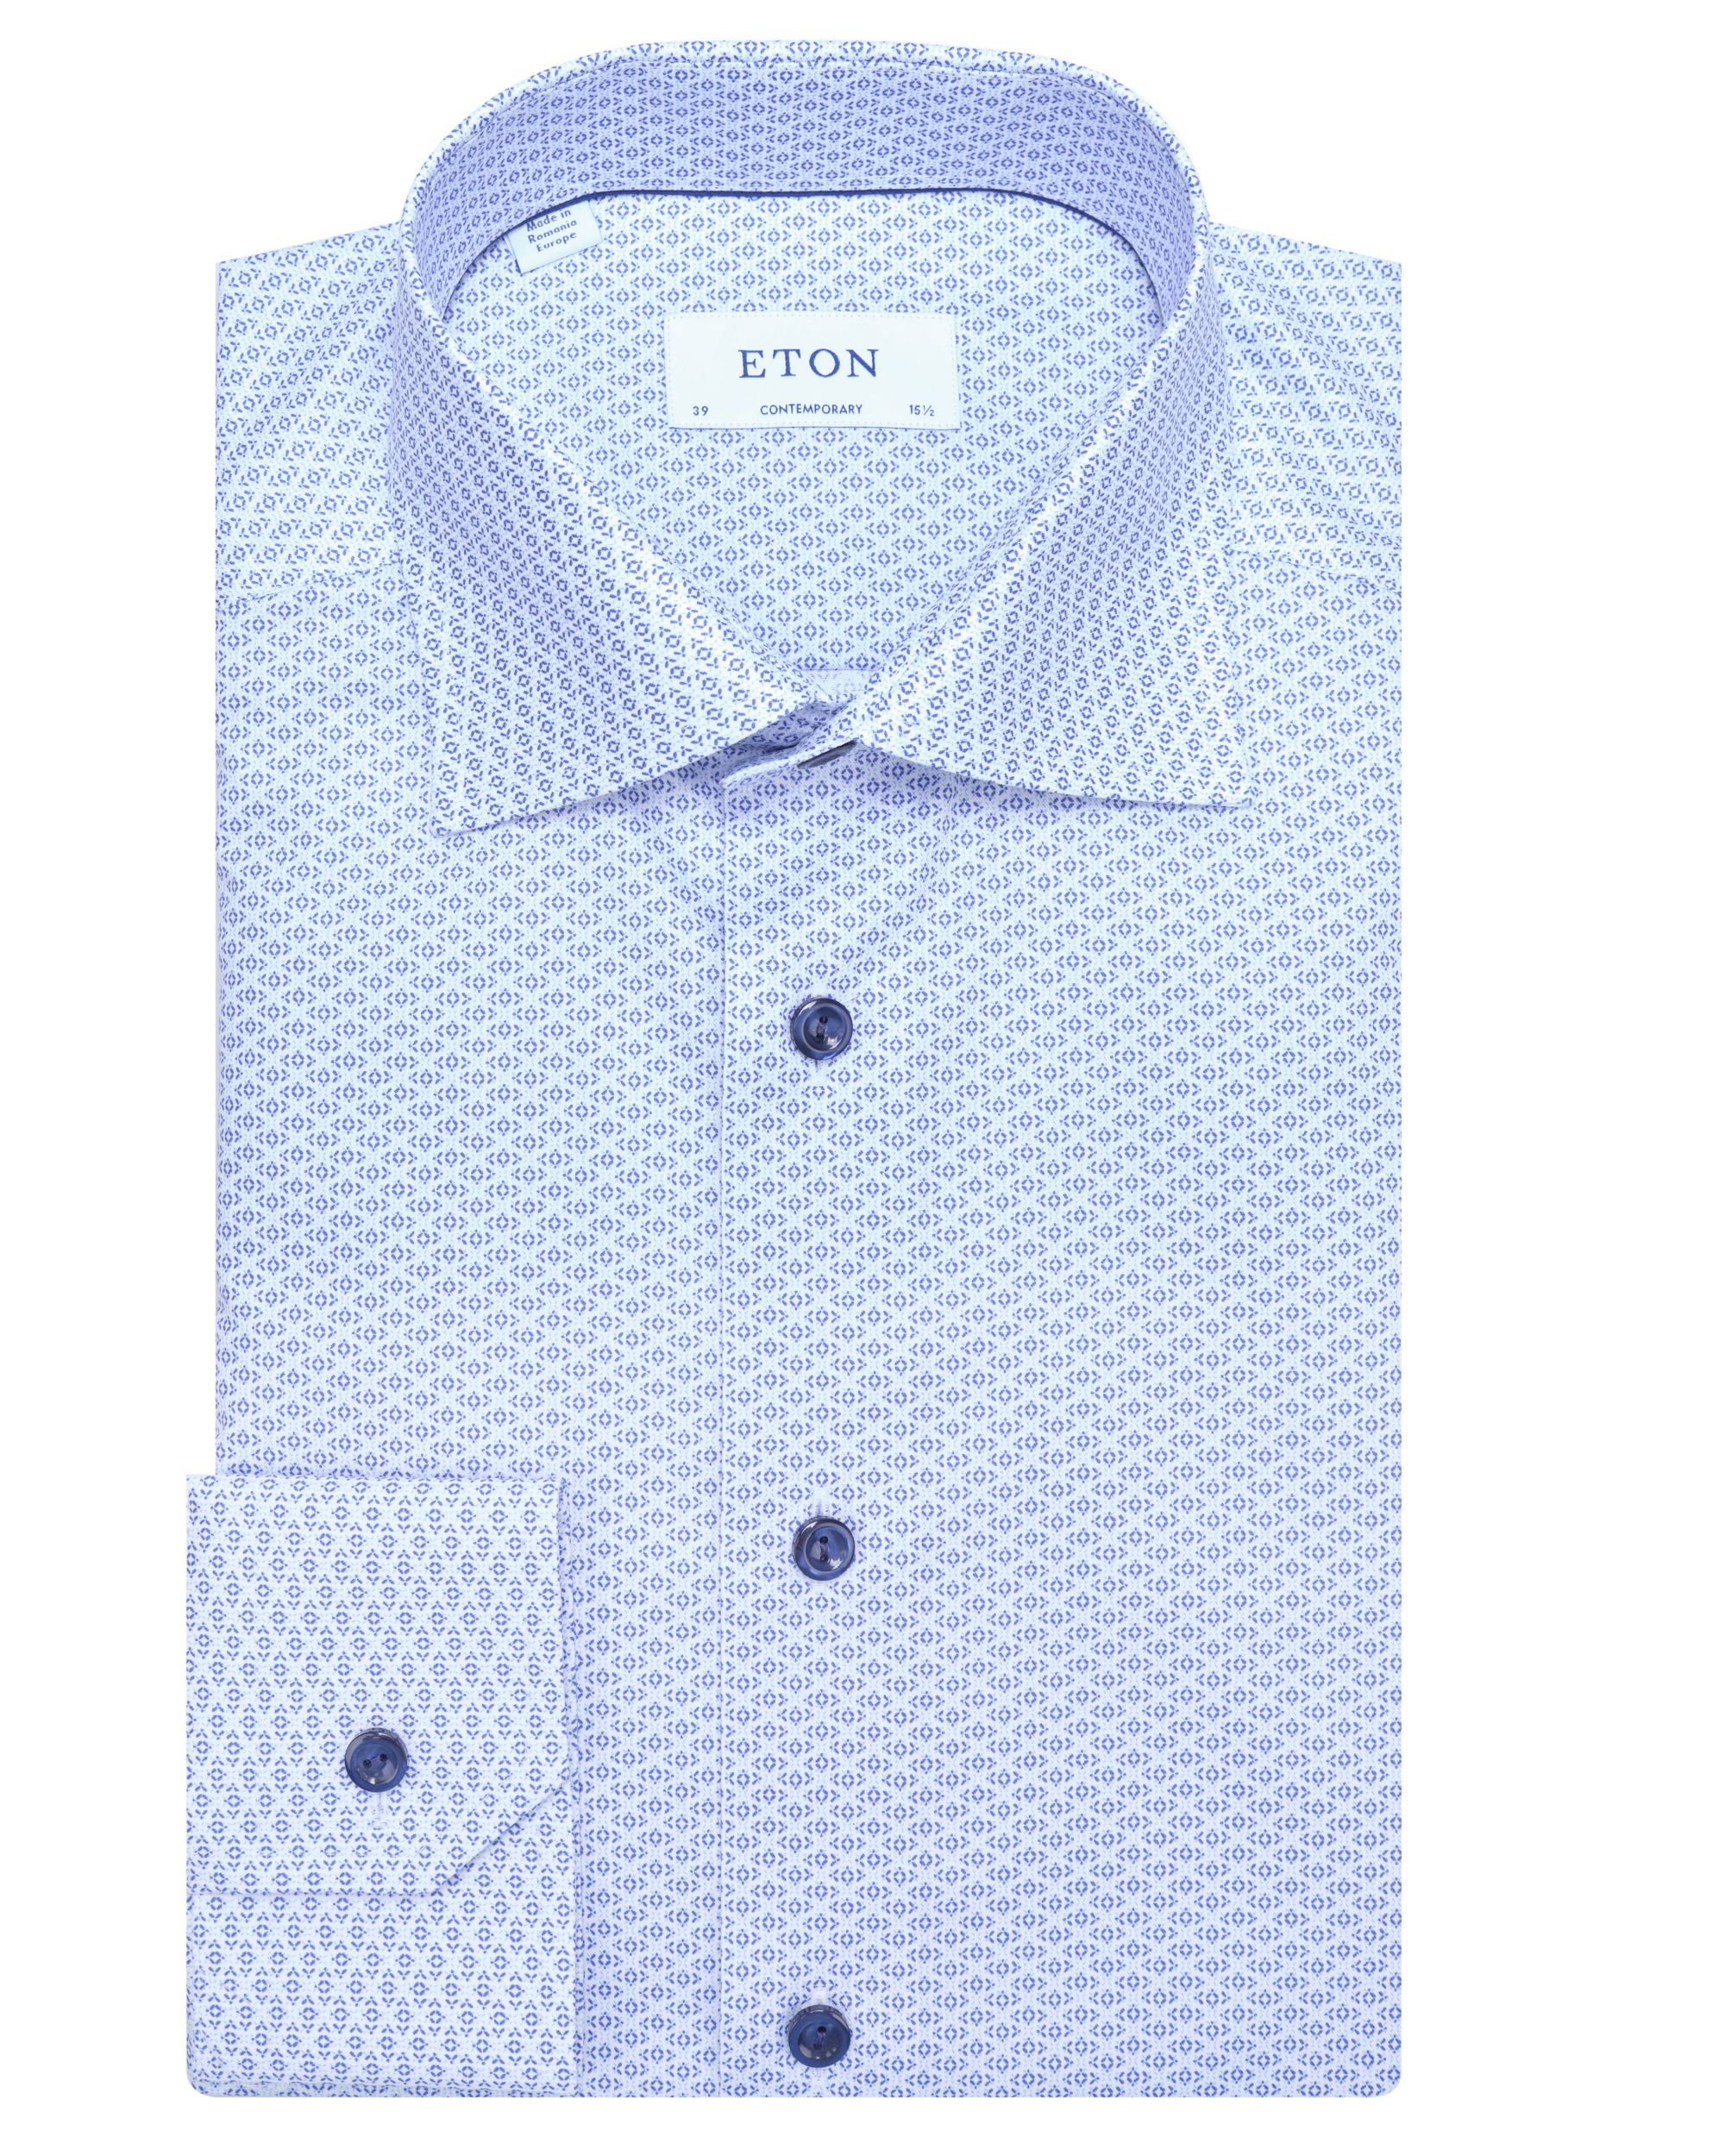 ETON Overhemd LM Blauw 078824-001-37/38